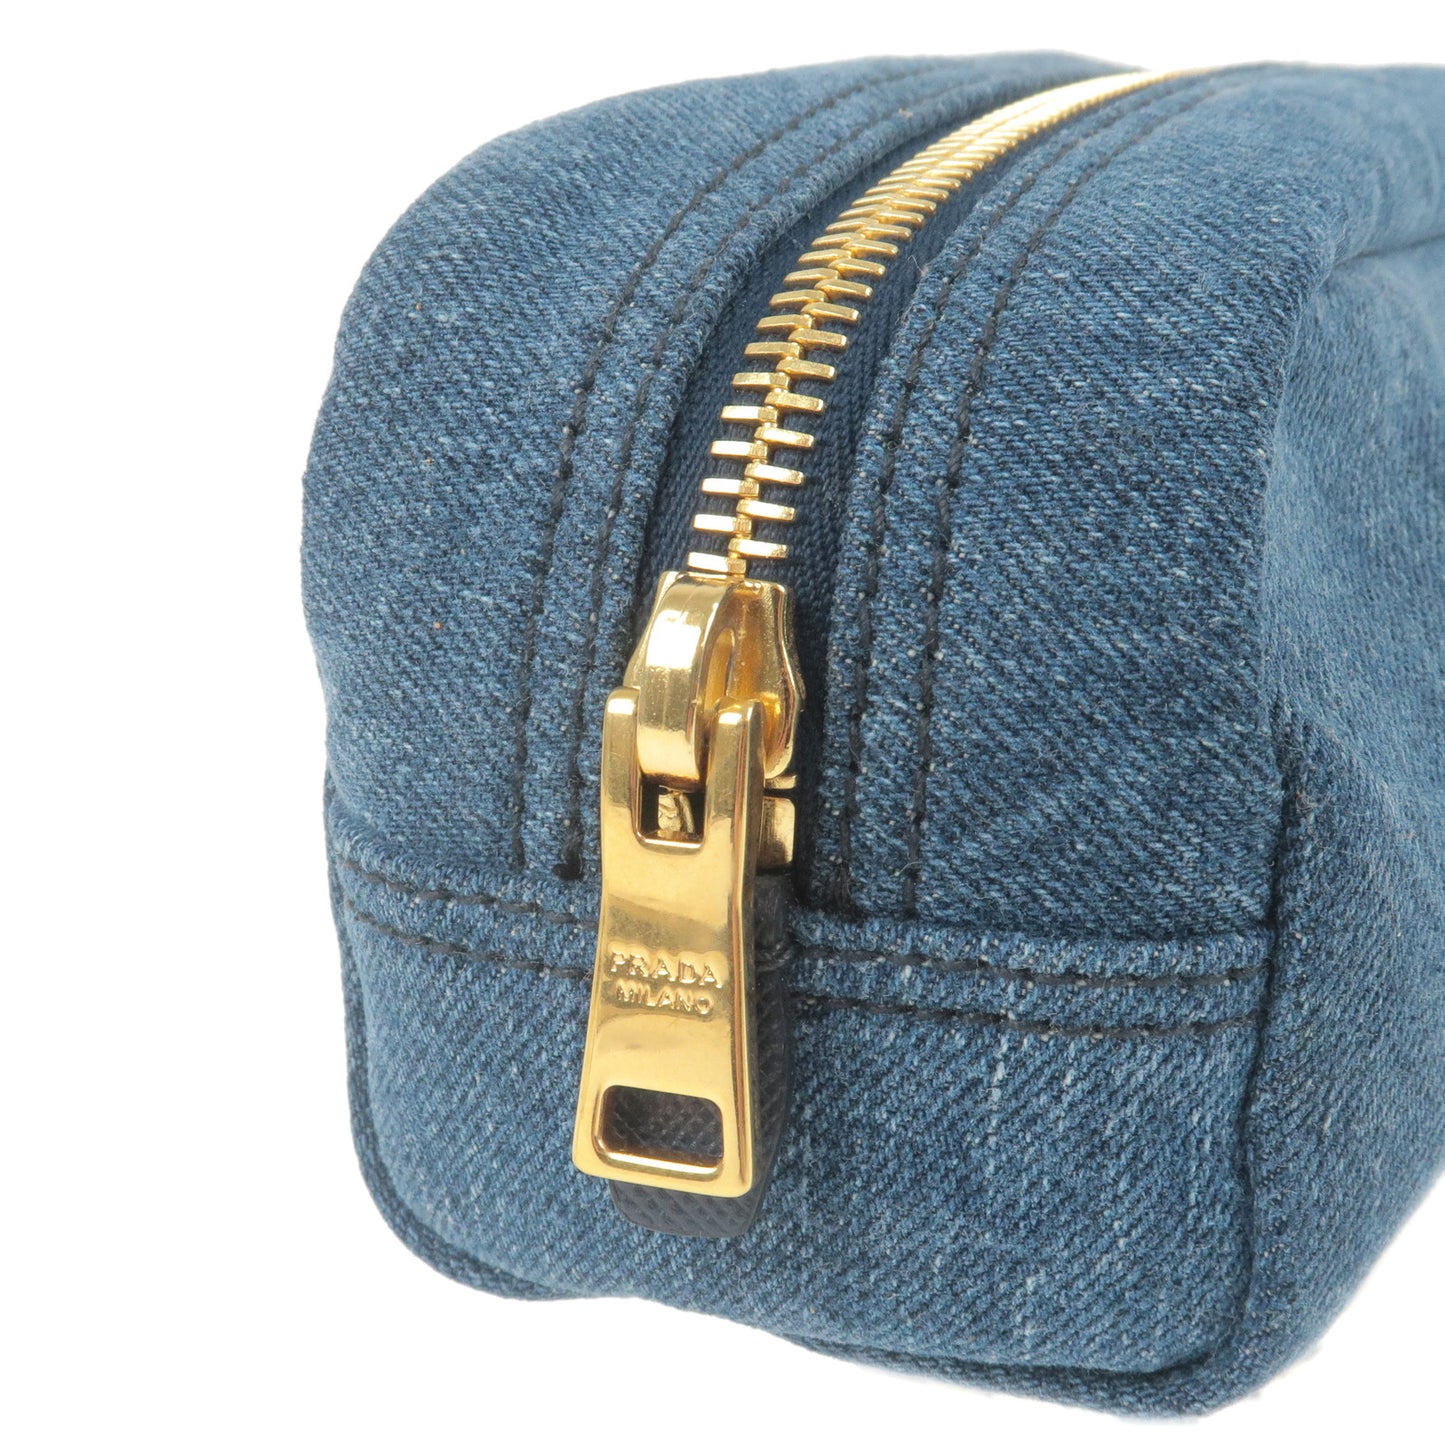 PRADA Denim Leather Pouch Clutch Bag Cosmetics Bag Blue